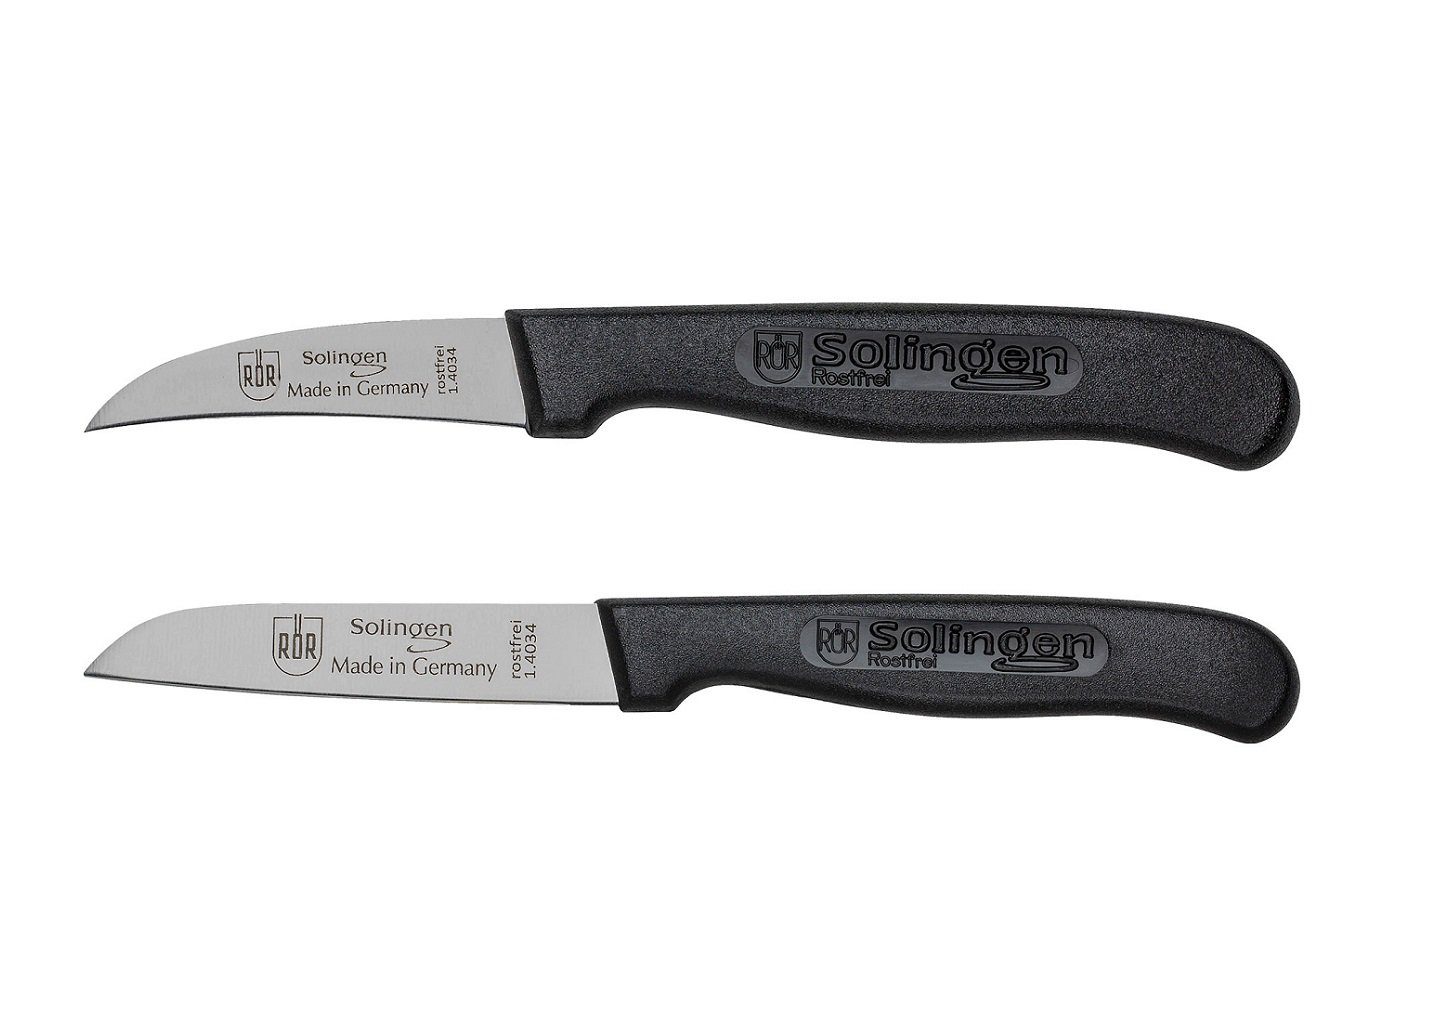 RÖR Messer-Set 10164-2, Schäl-/Küchenmesser Set 2-teilig, einfache Handhabung, perfekt für jede Küche - Made in Solingen